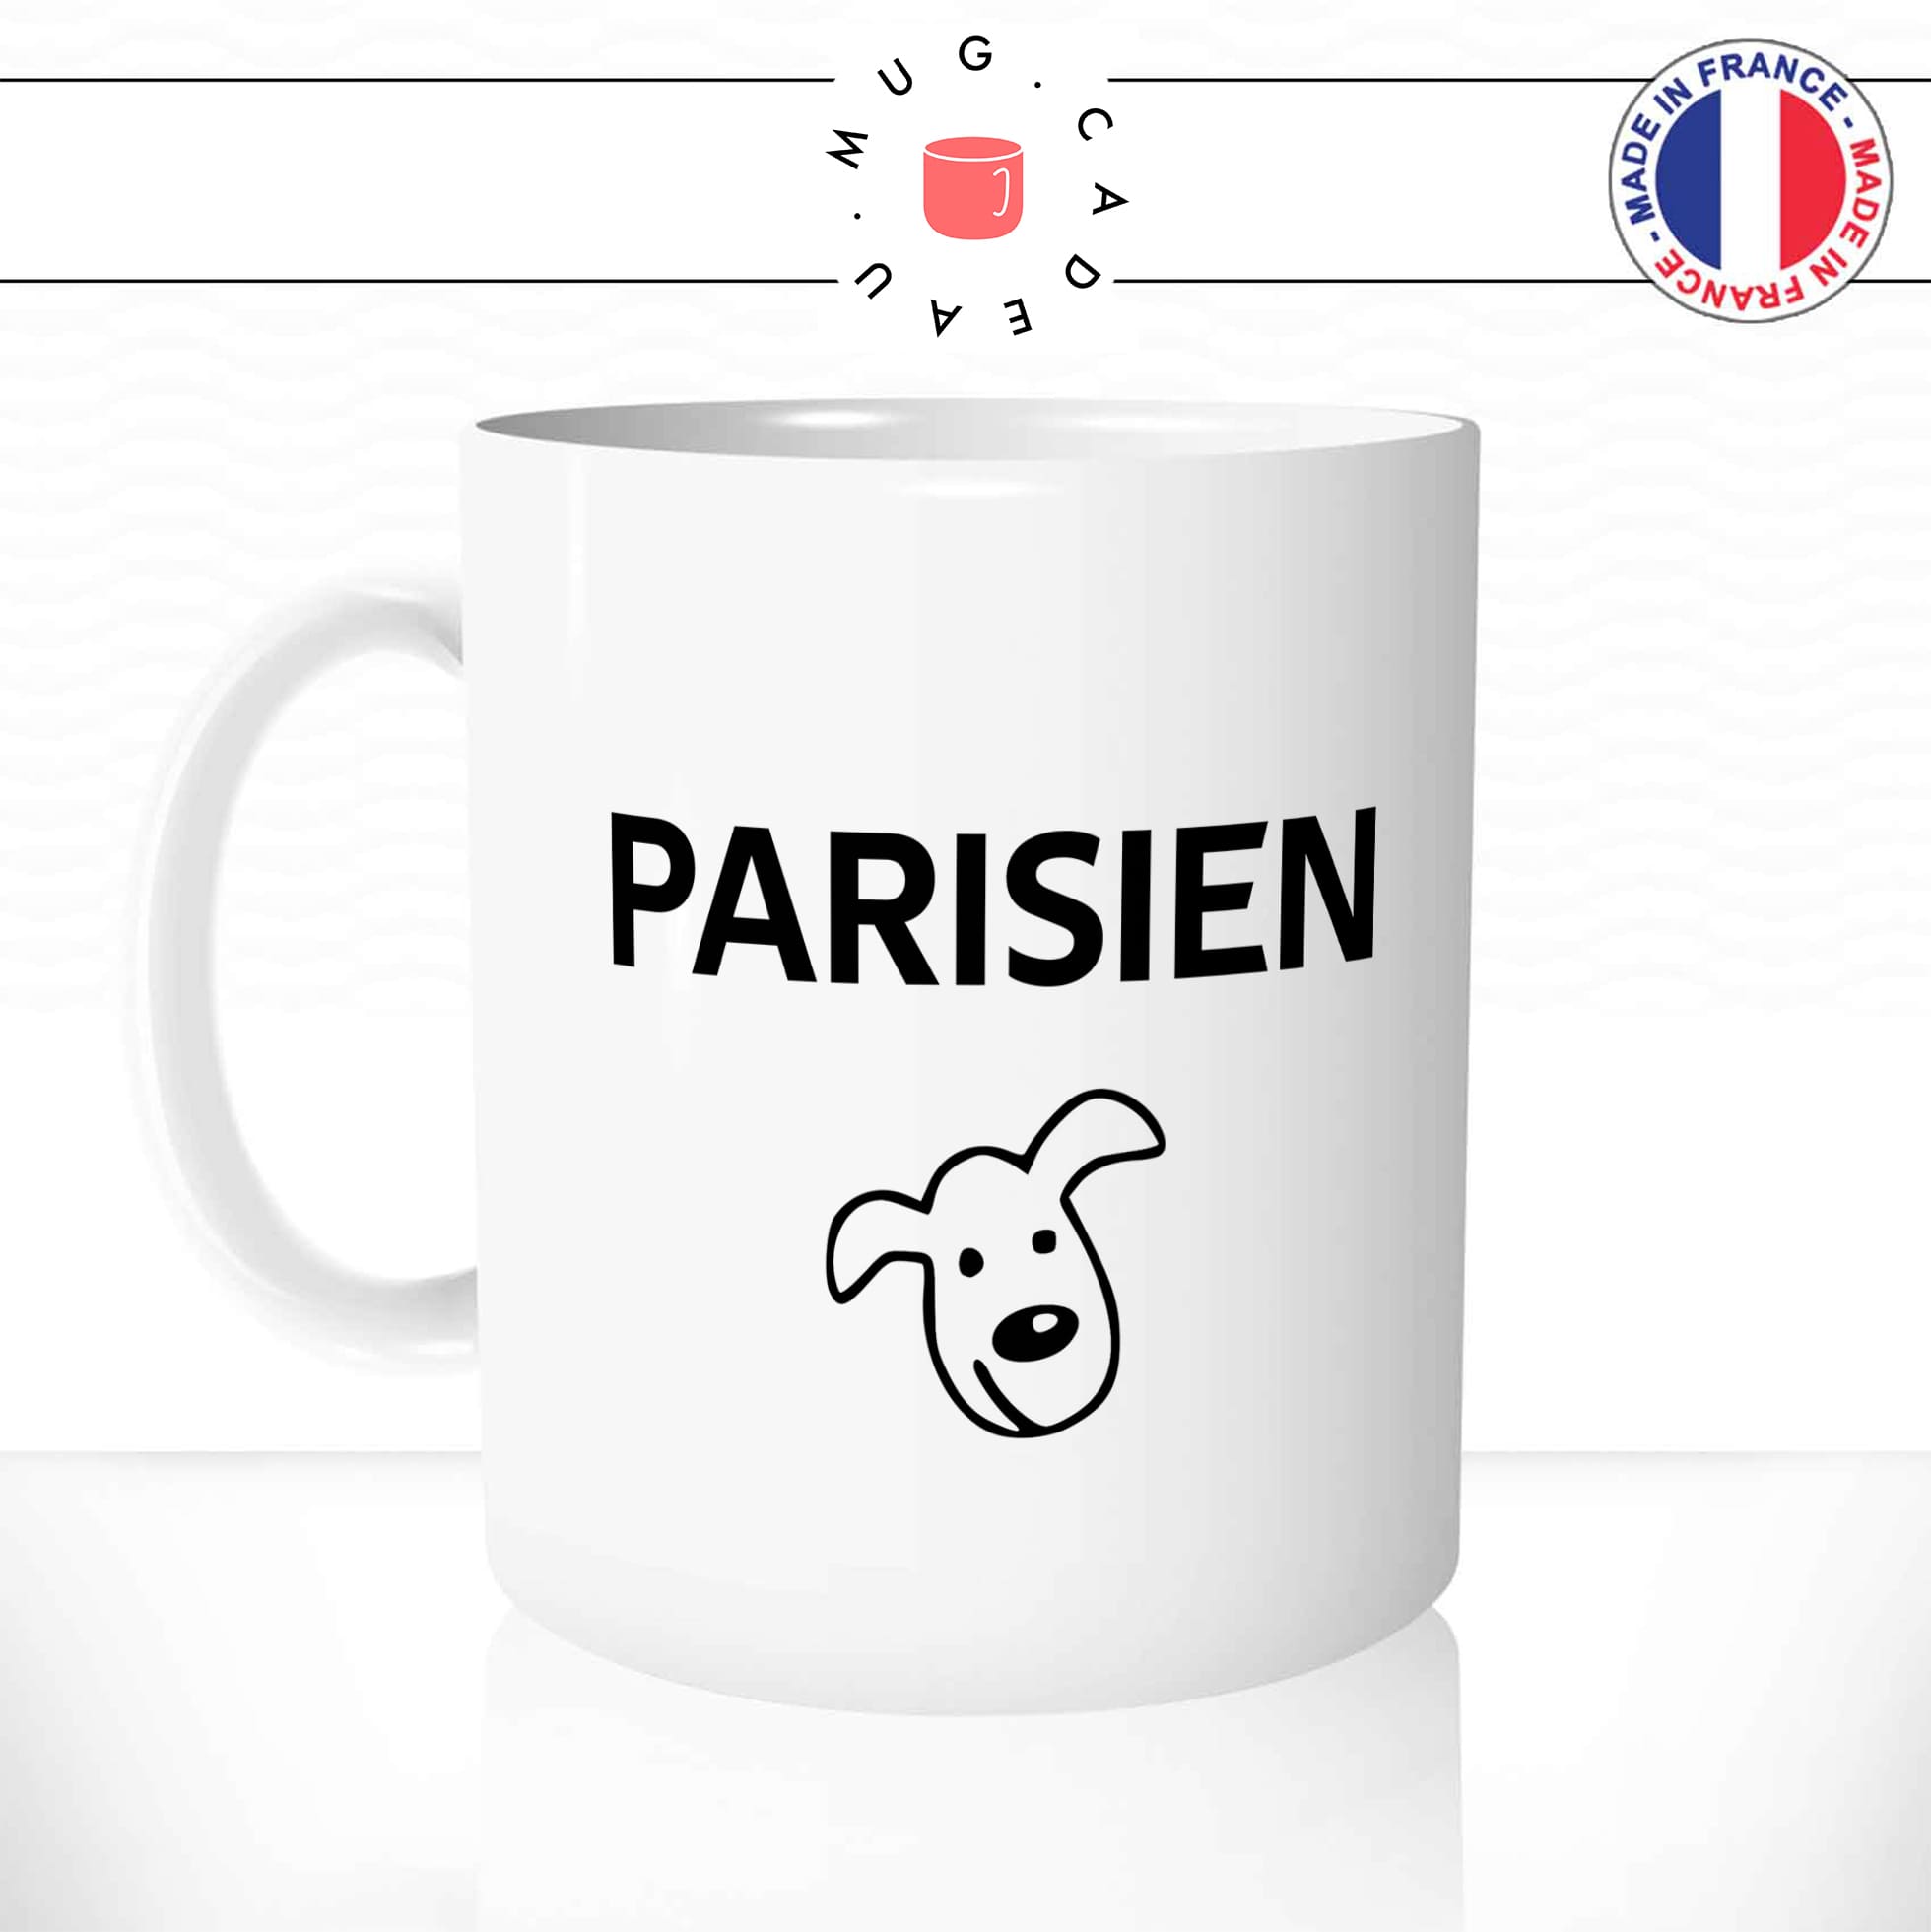 mug-tasse-blanc-brillant-parisien-tete-de-chien-parigot-tete-de-veau-citation-paris-francais-france-humour-idée-cadeau-originale-fun-unique